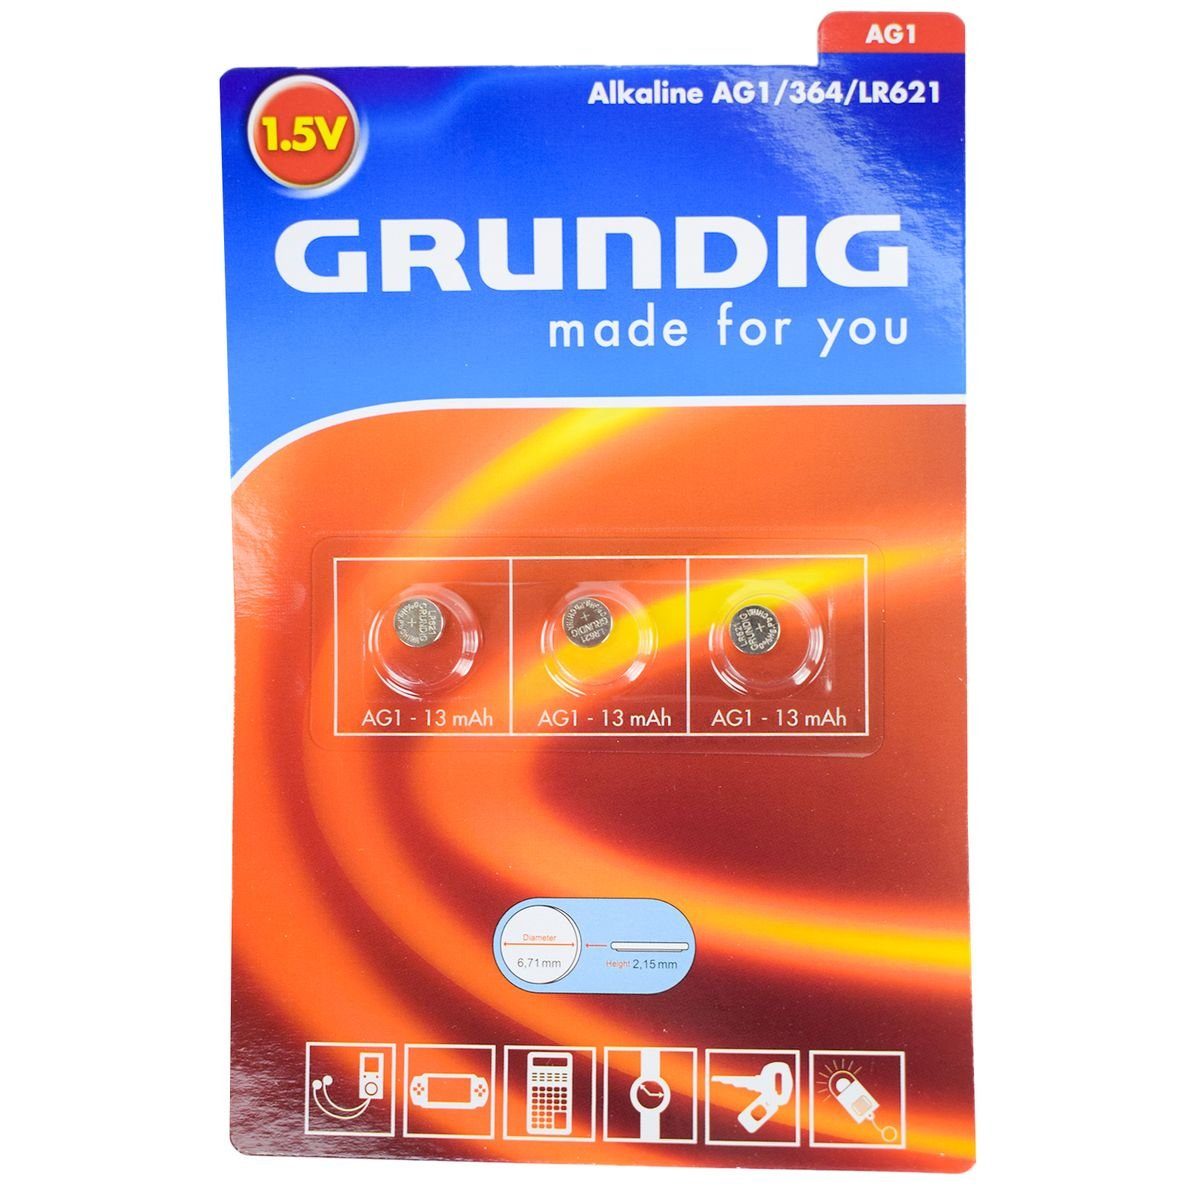 Marabellas Shop Grundig Knopfzellenbatterien 3-tlg. Alkaline, Lithium und Hearing Aid Batterie, (3 St), universell einsetzbar AG1 (364/LR621)